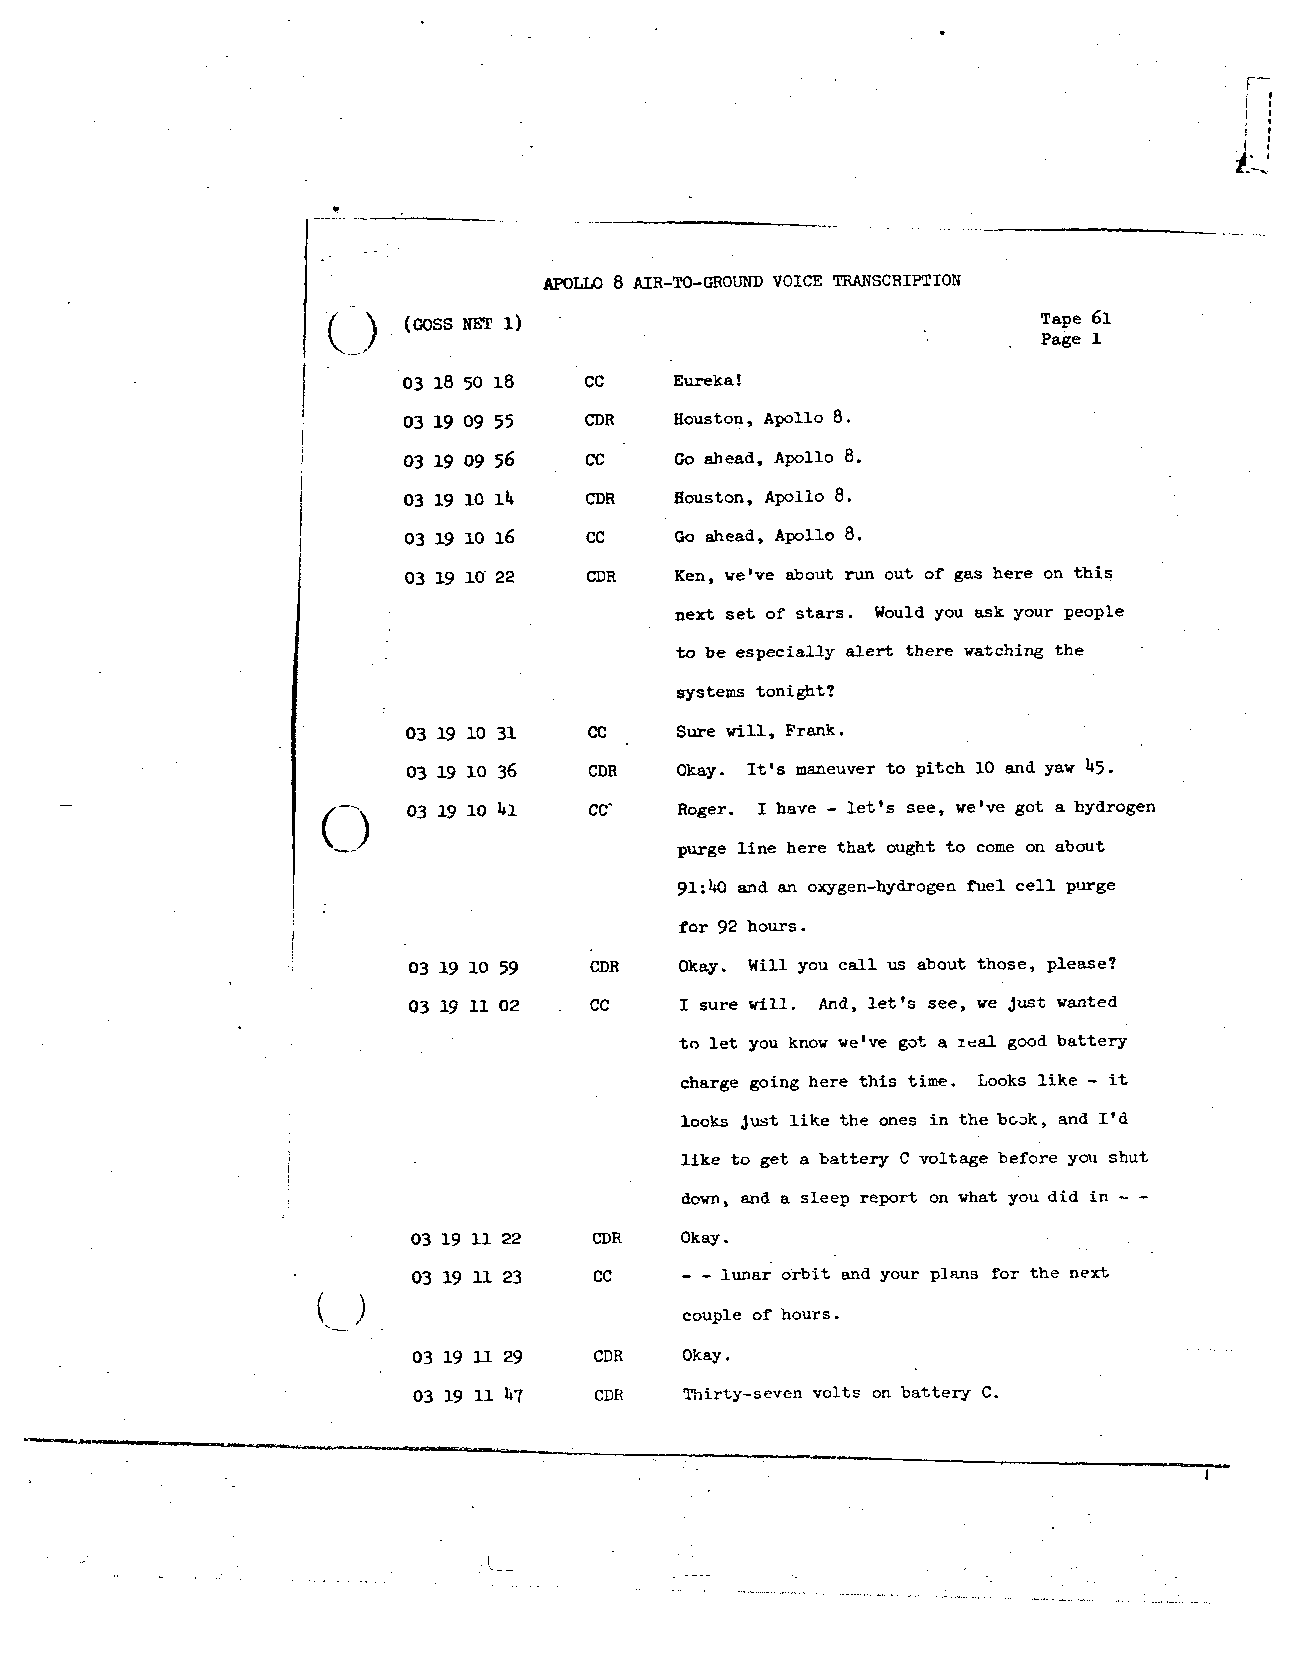 Page 485 of Apollo 8’s original transcript